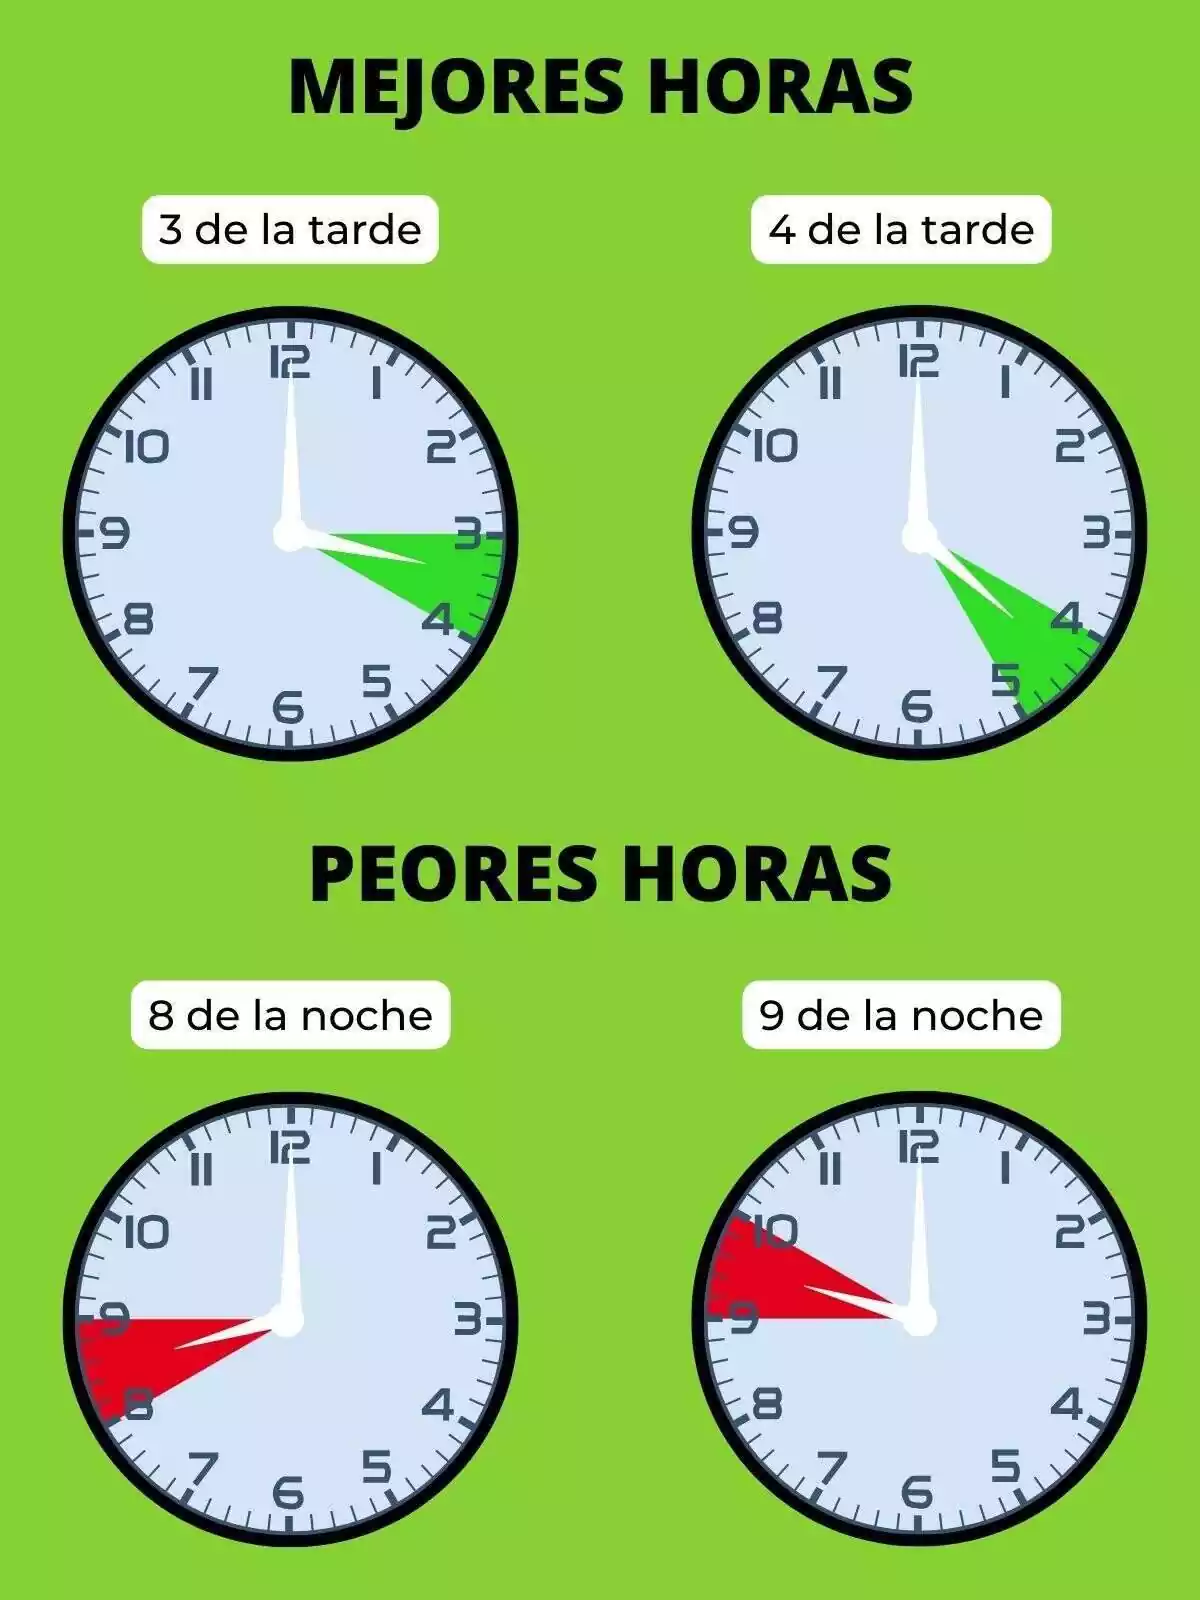 Montaje con relojes que muestran las mejores y peores horas para consumir luz